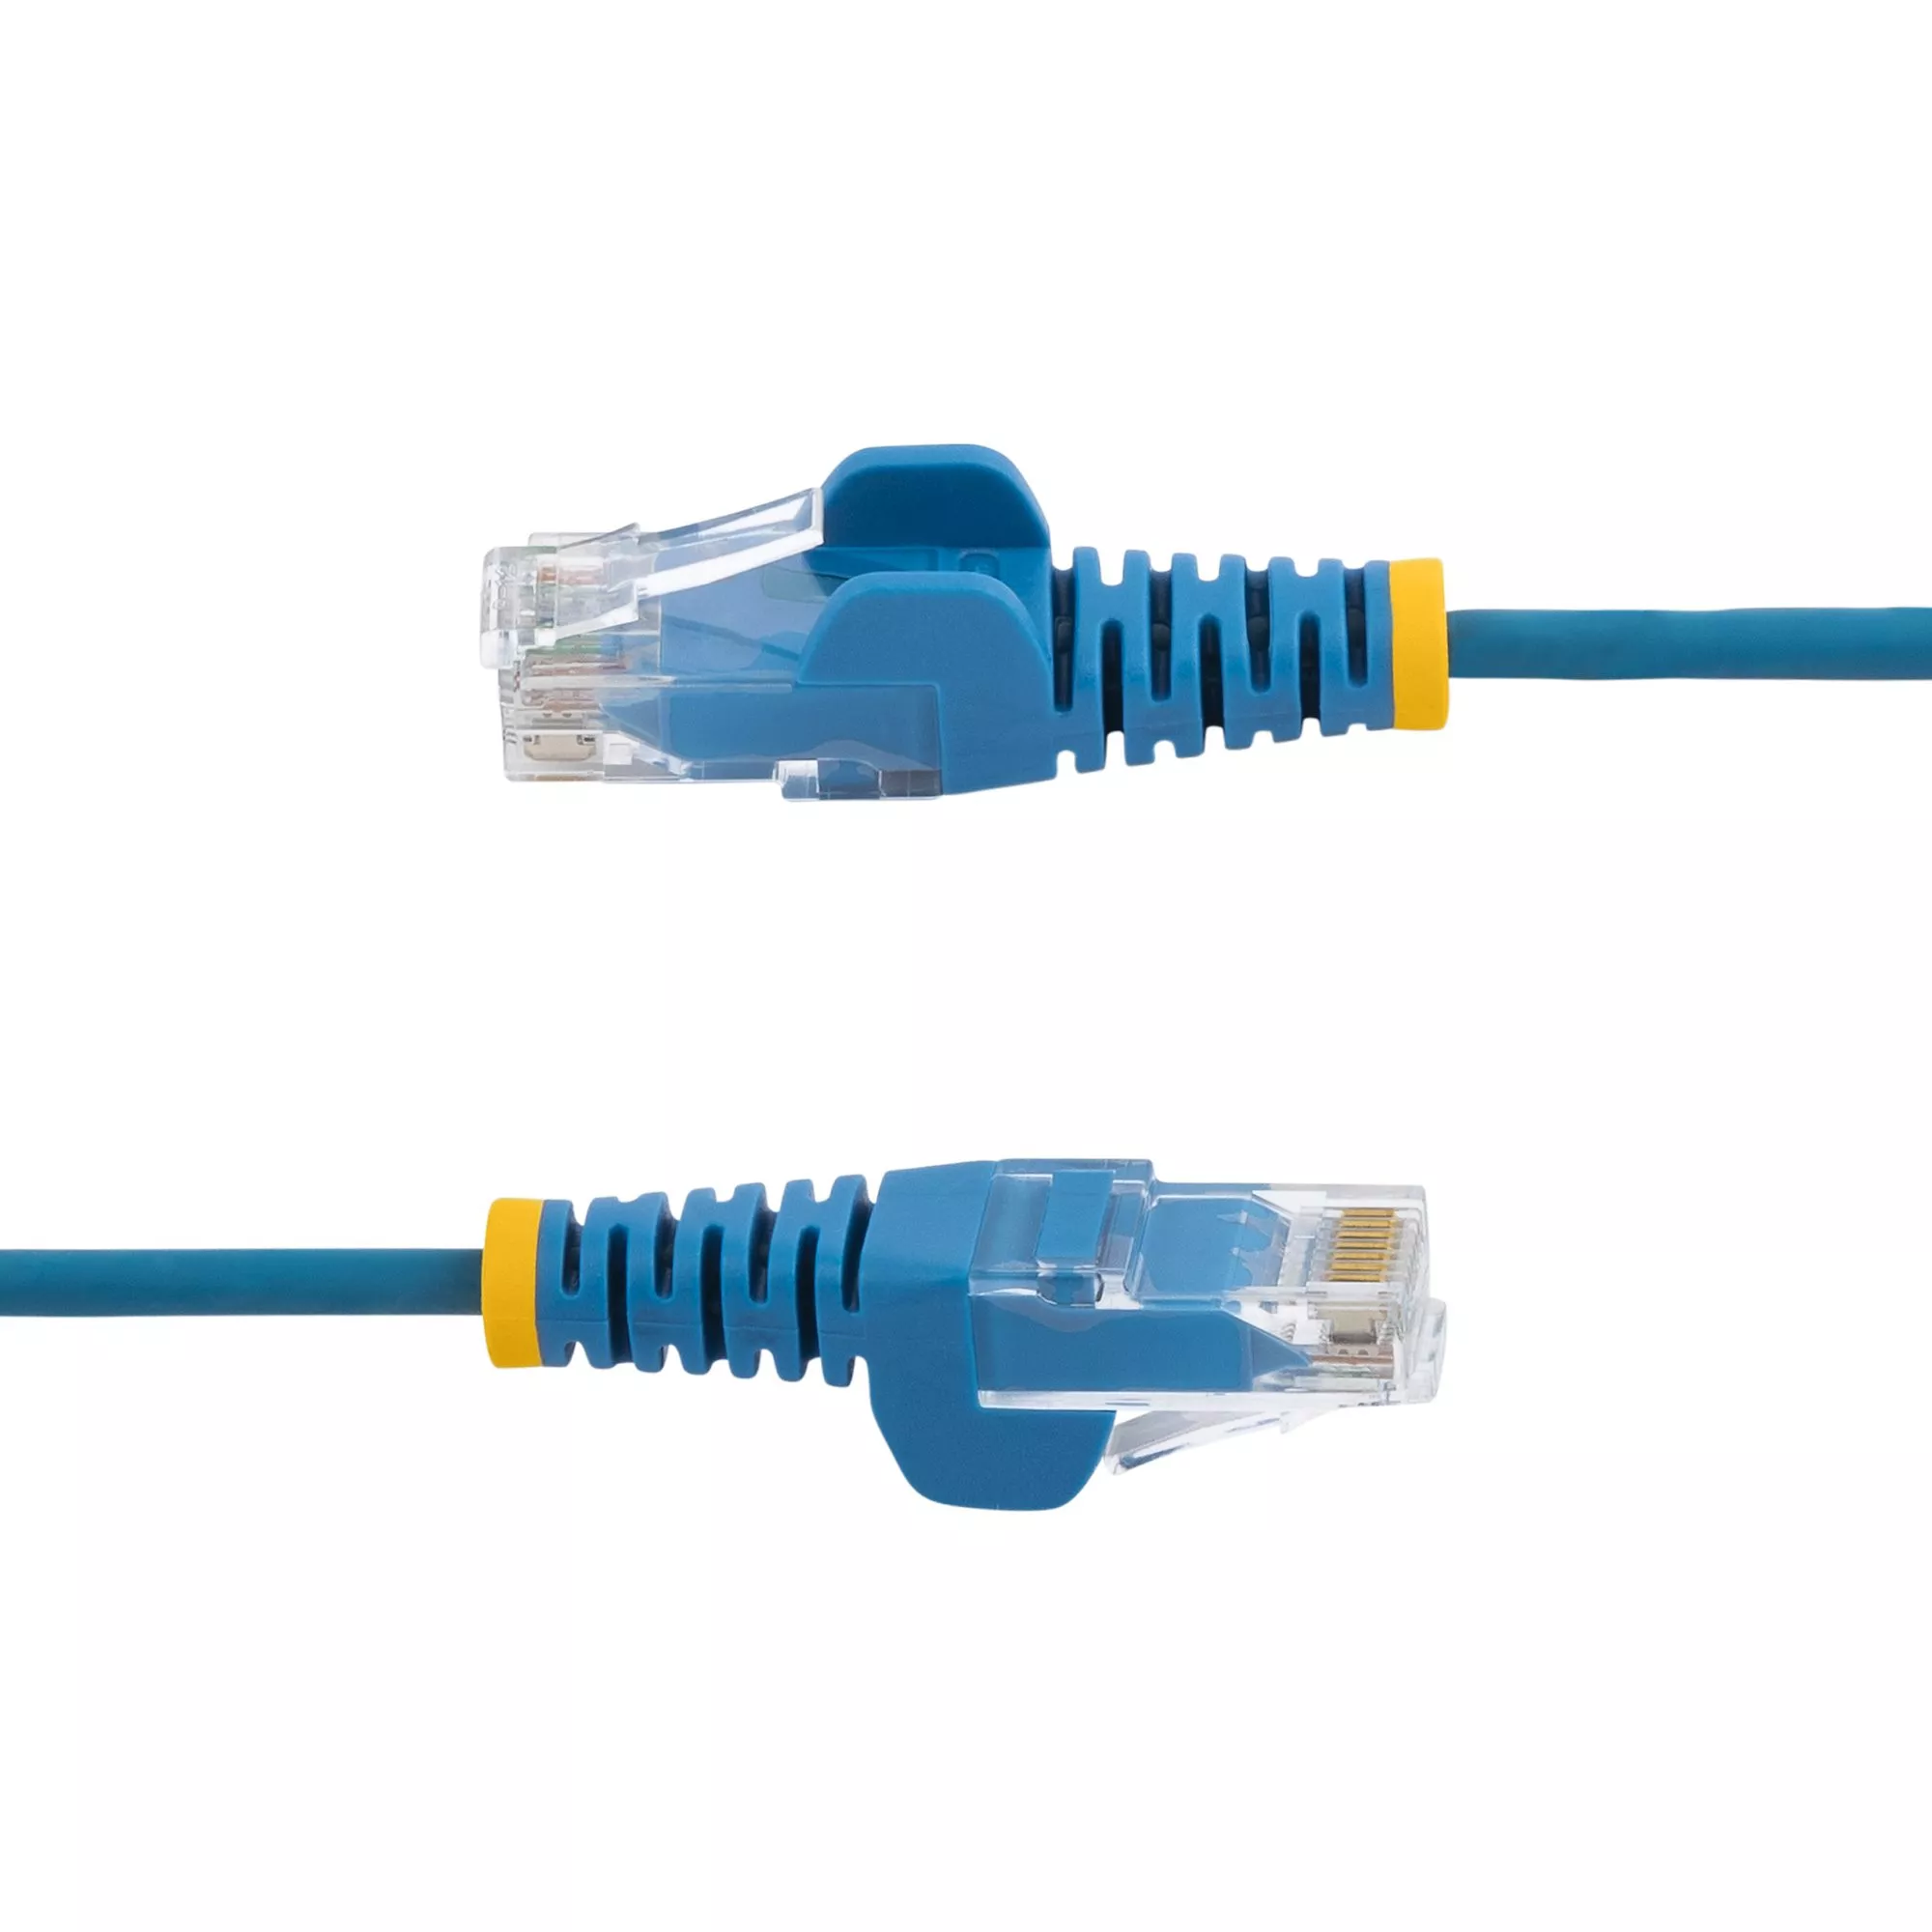 Achat StarTech.com Câble réseau Ethernet RJ45 Cat6 de 1 sur hello RSE - visuel 3